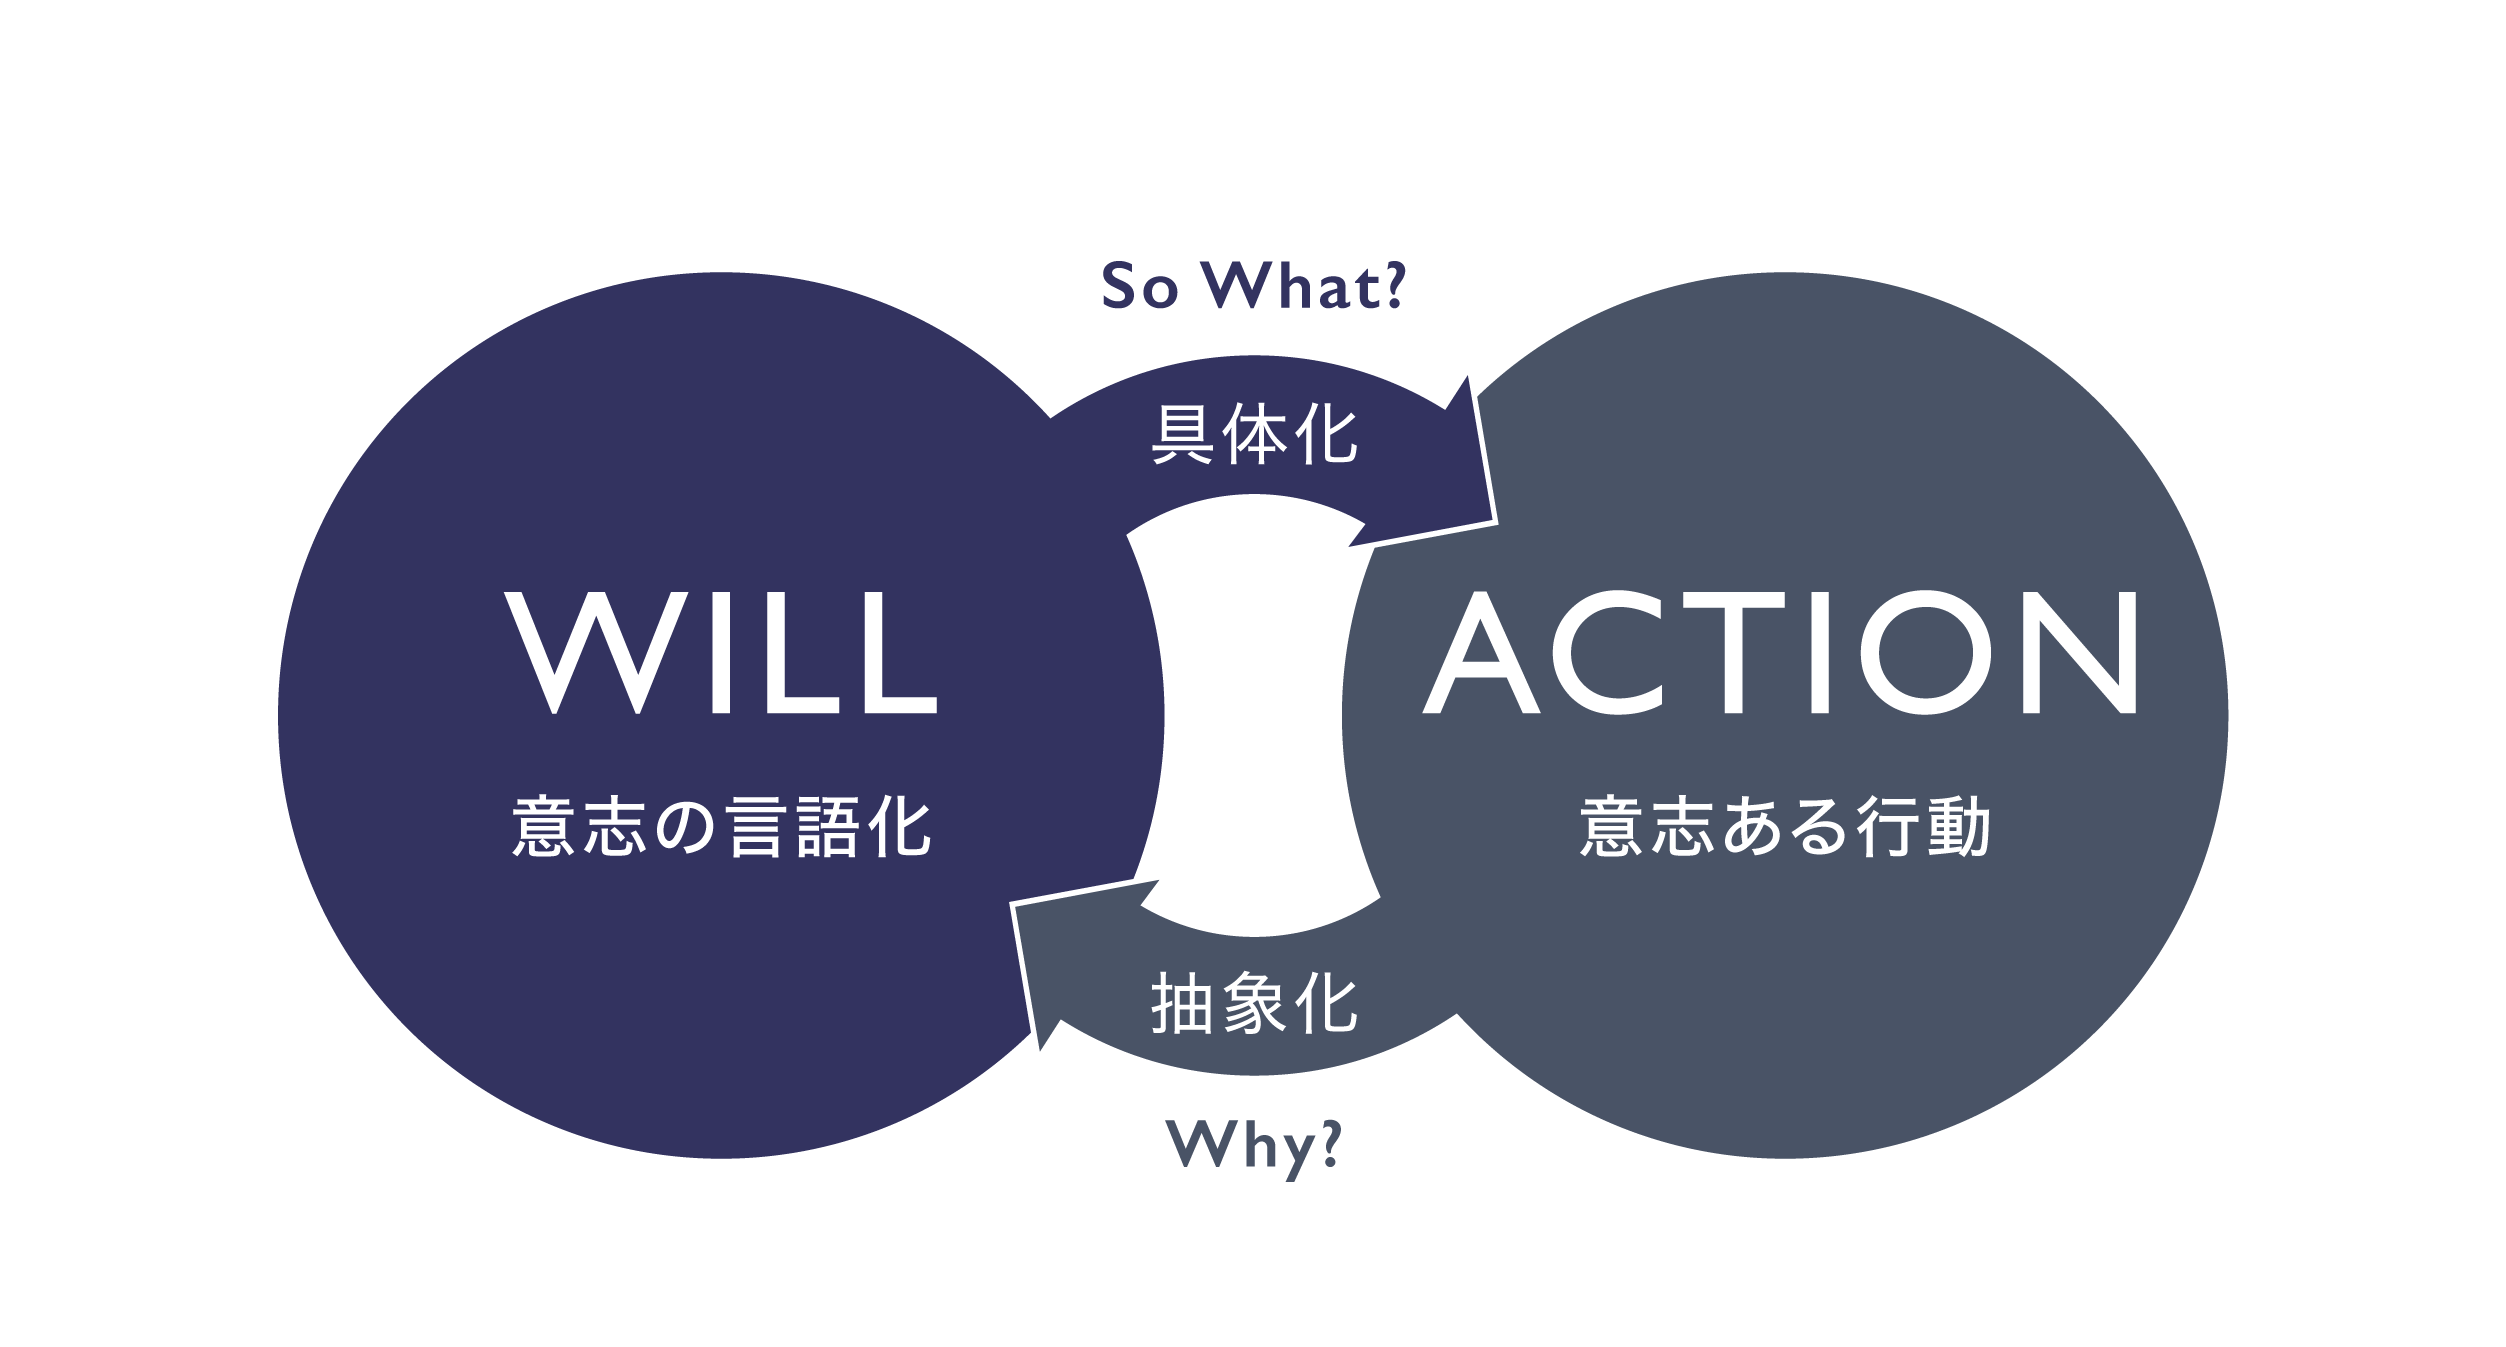 個人が「自分を生きる」WILL-ACTIONサイクル。自分の意思を言語化し、具体的な行動に移す。行動してみて、自分の意思を言語化する。相互に行き来しながら前進していくことで、モヤモヤはワクワクに変わる。